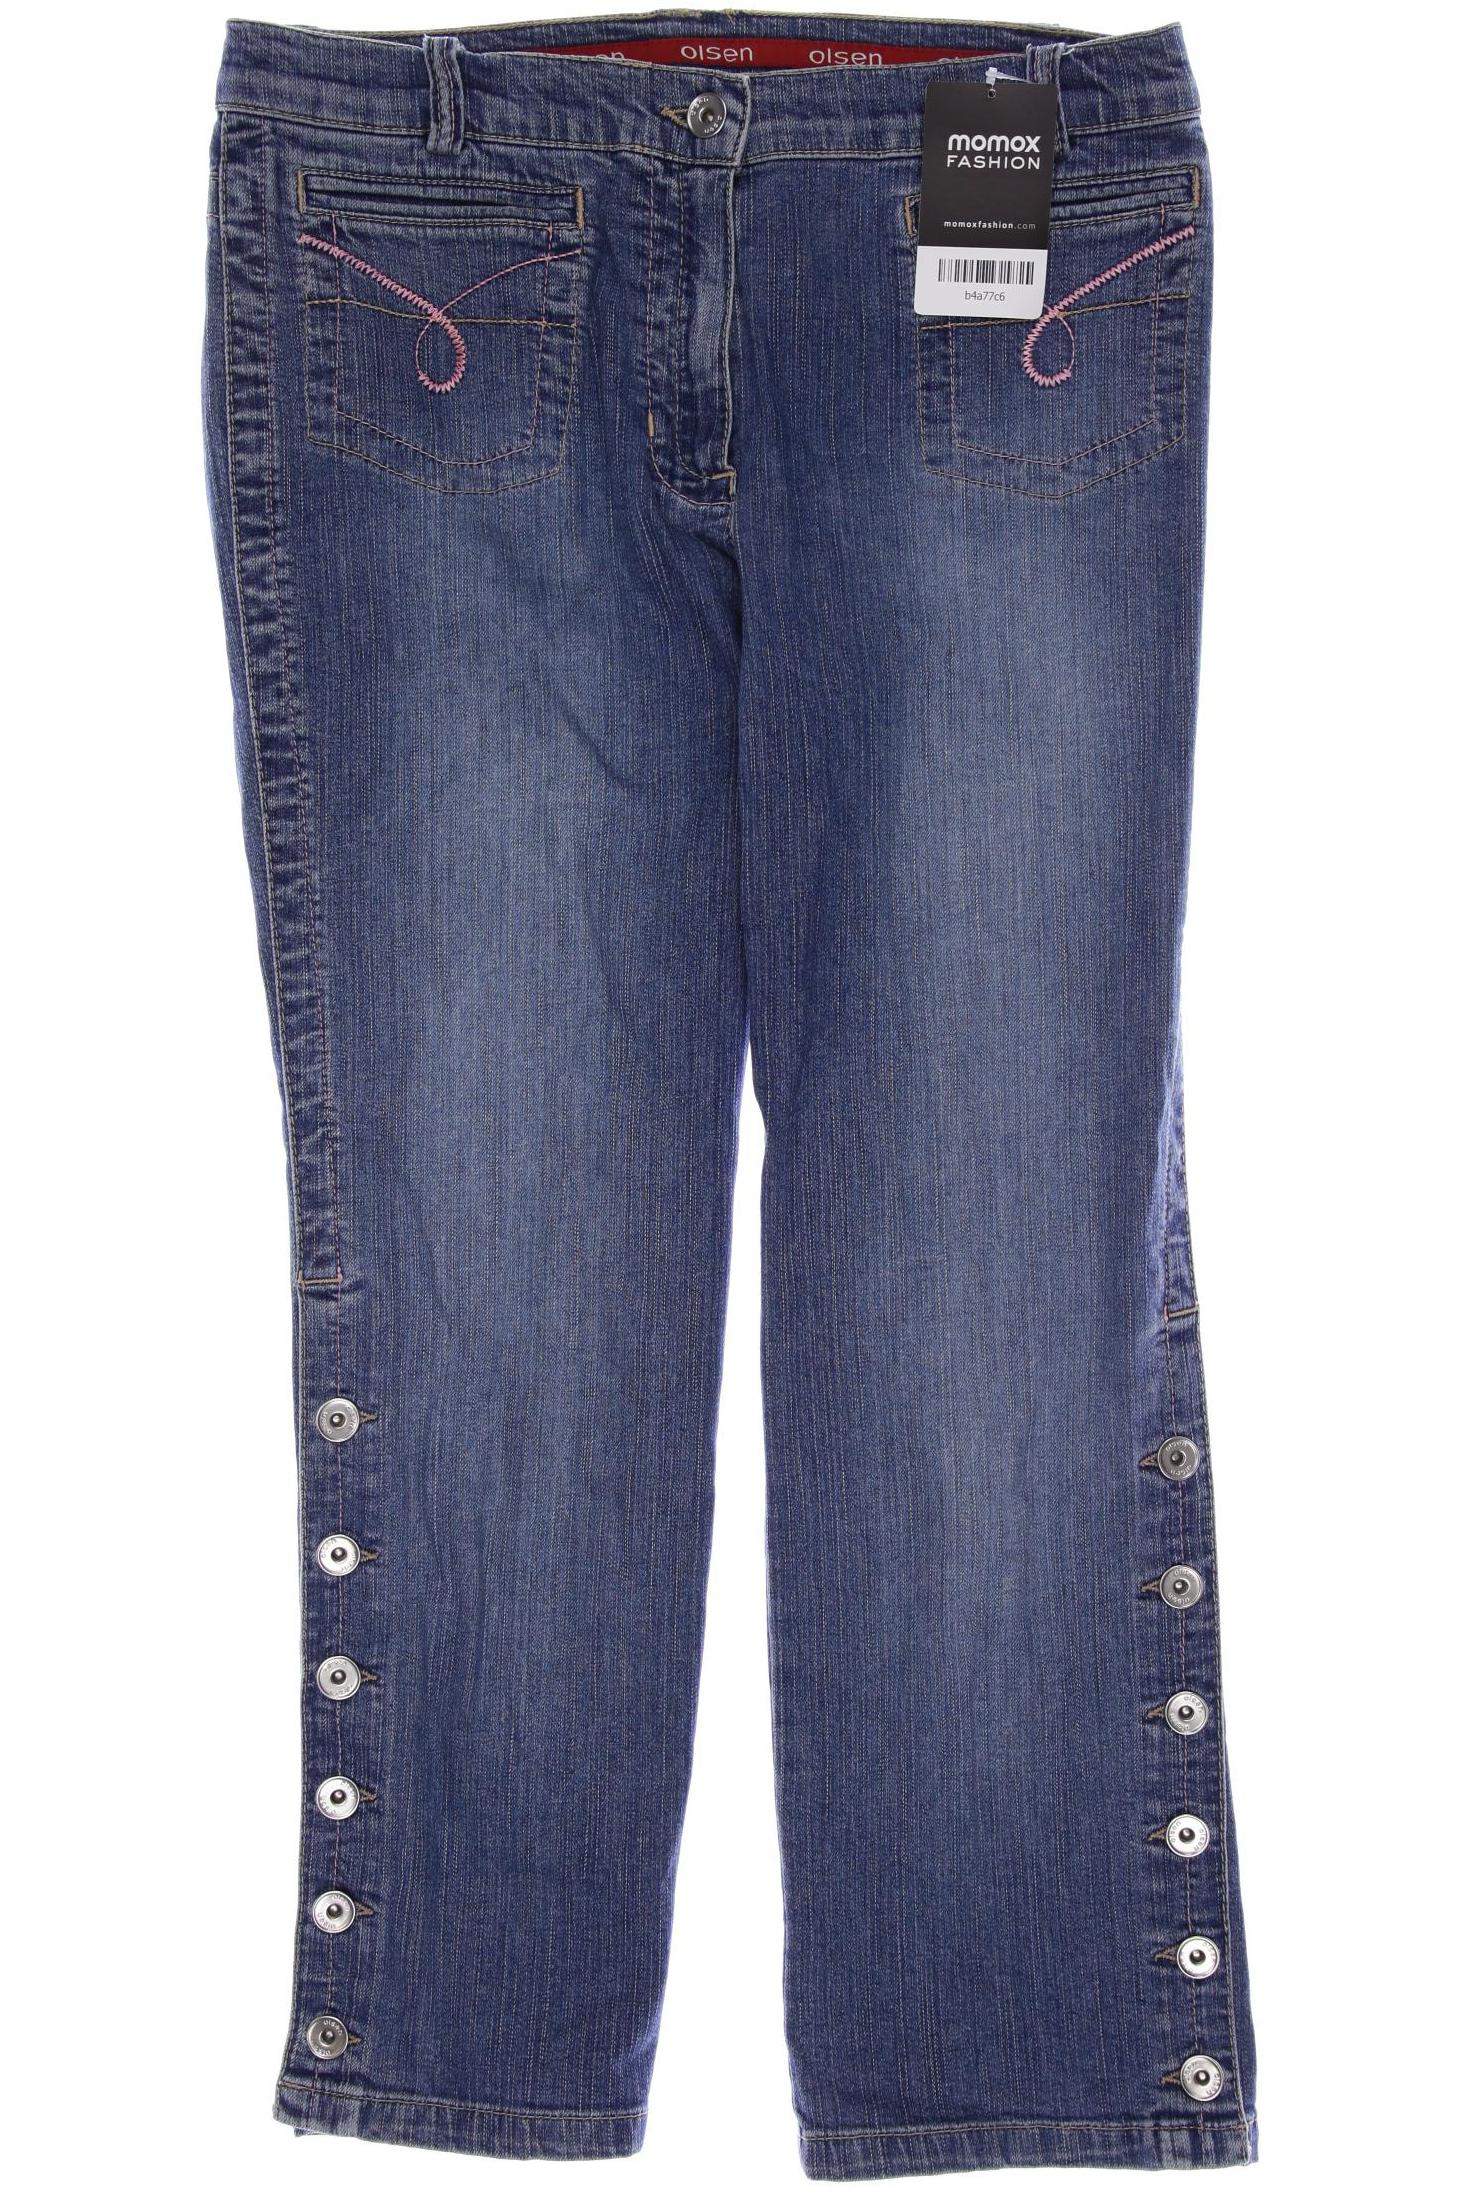 Olsen Damen Jeans, blau von Olsen